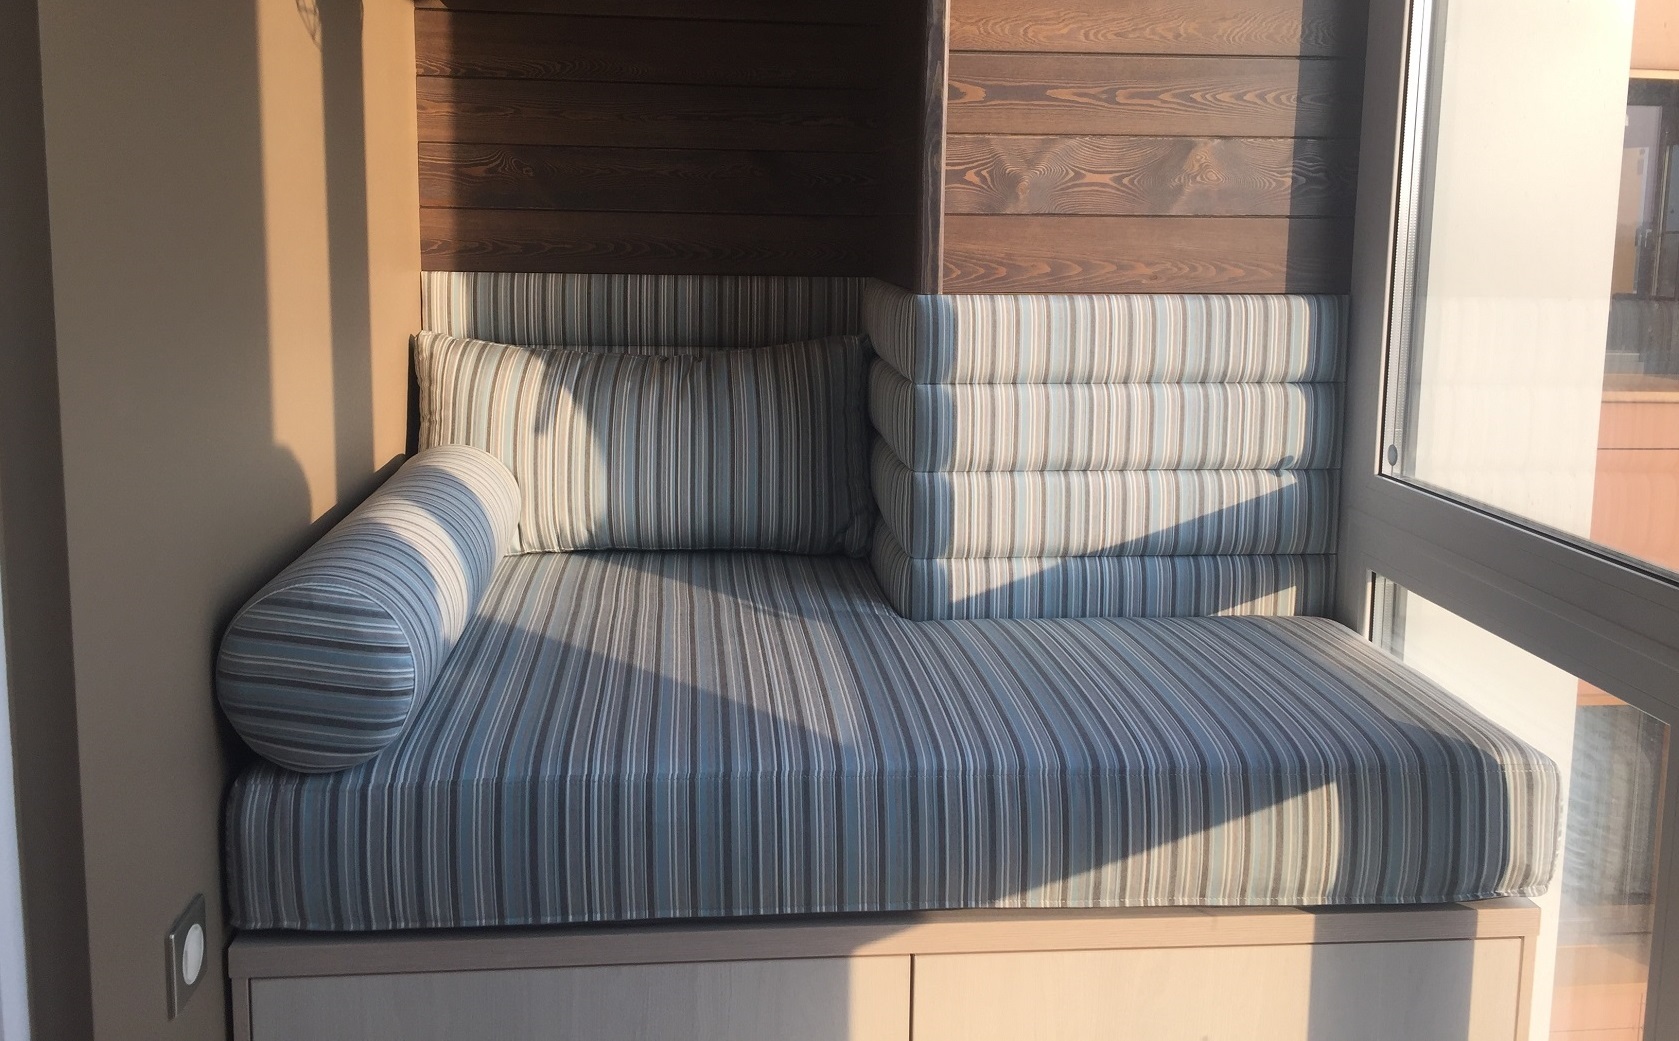 деревянный диван для балкона